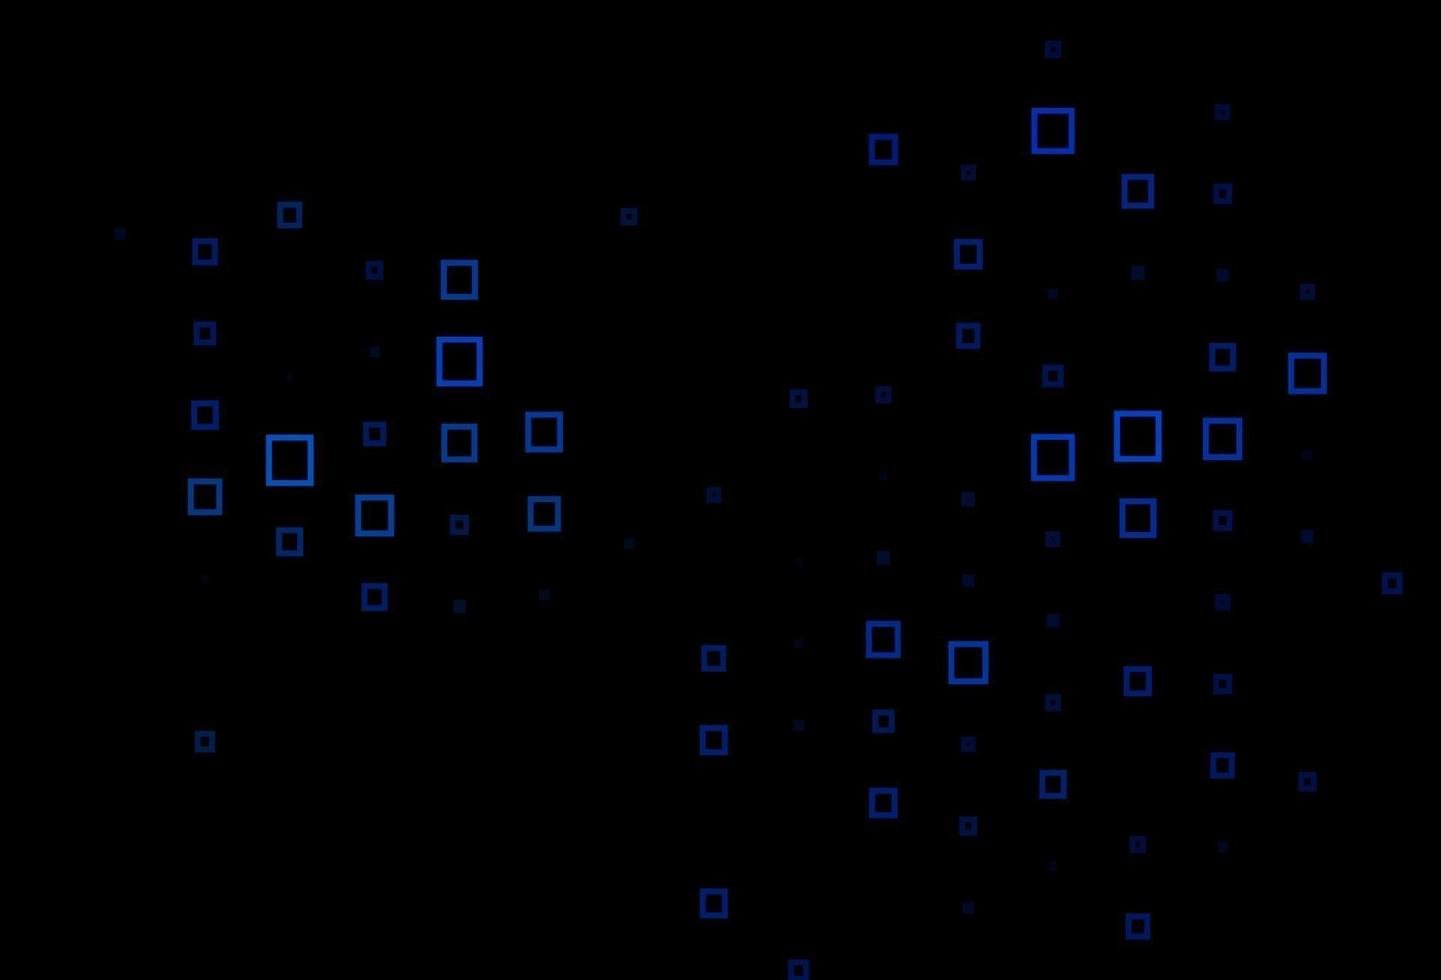 fundo vector azul escuro com retângulos.